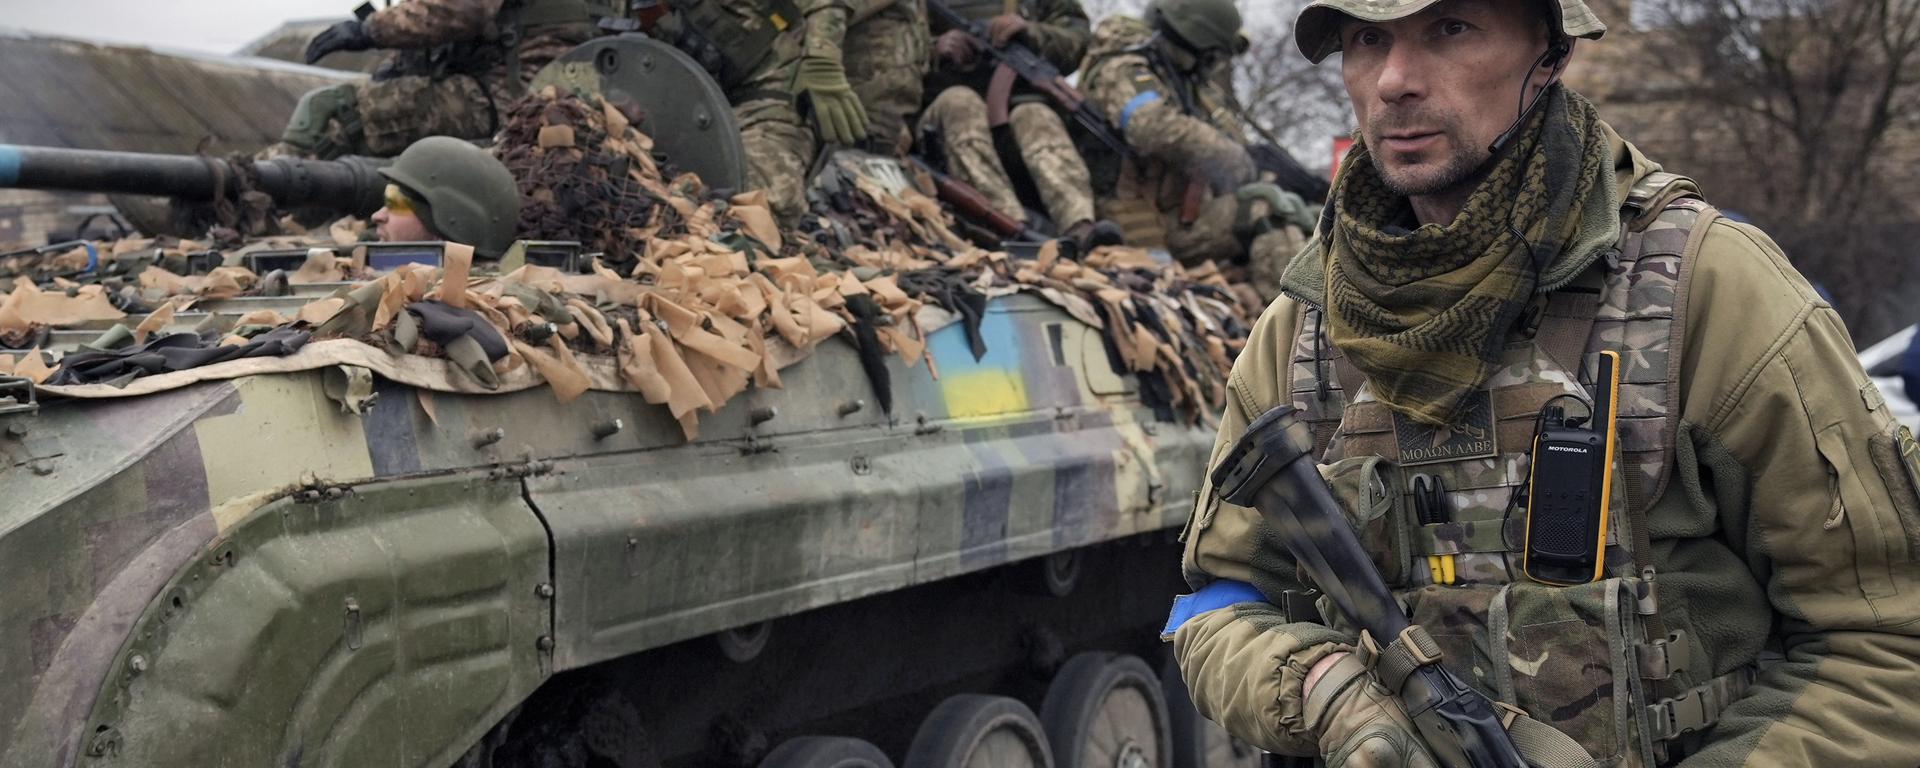 El ansiado envío de armas pesadas a Ucrania y por qué Rusia está preocupada